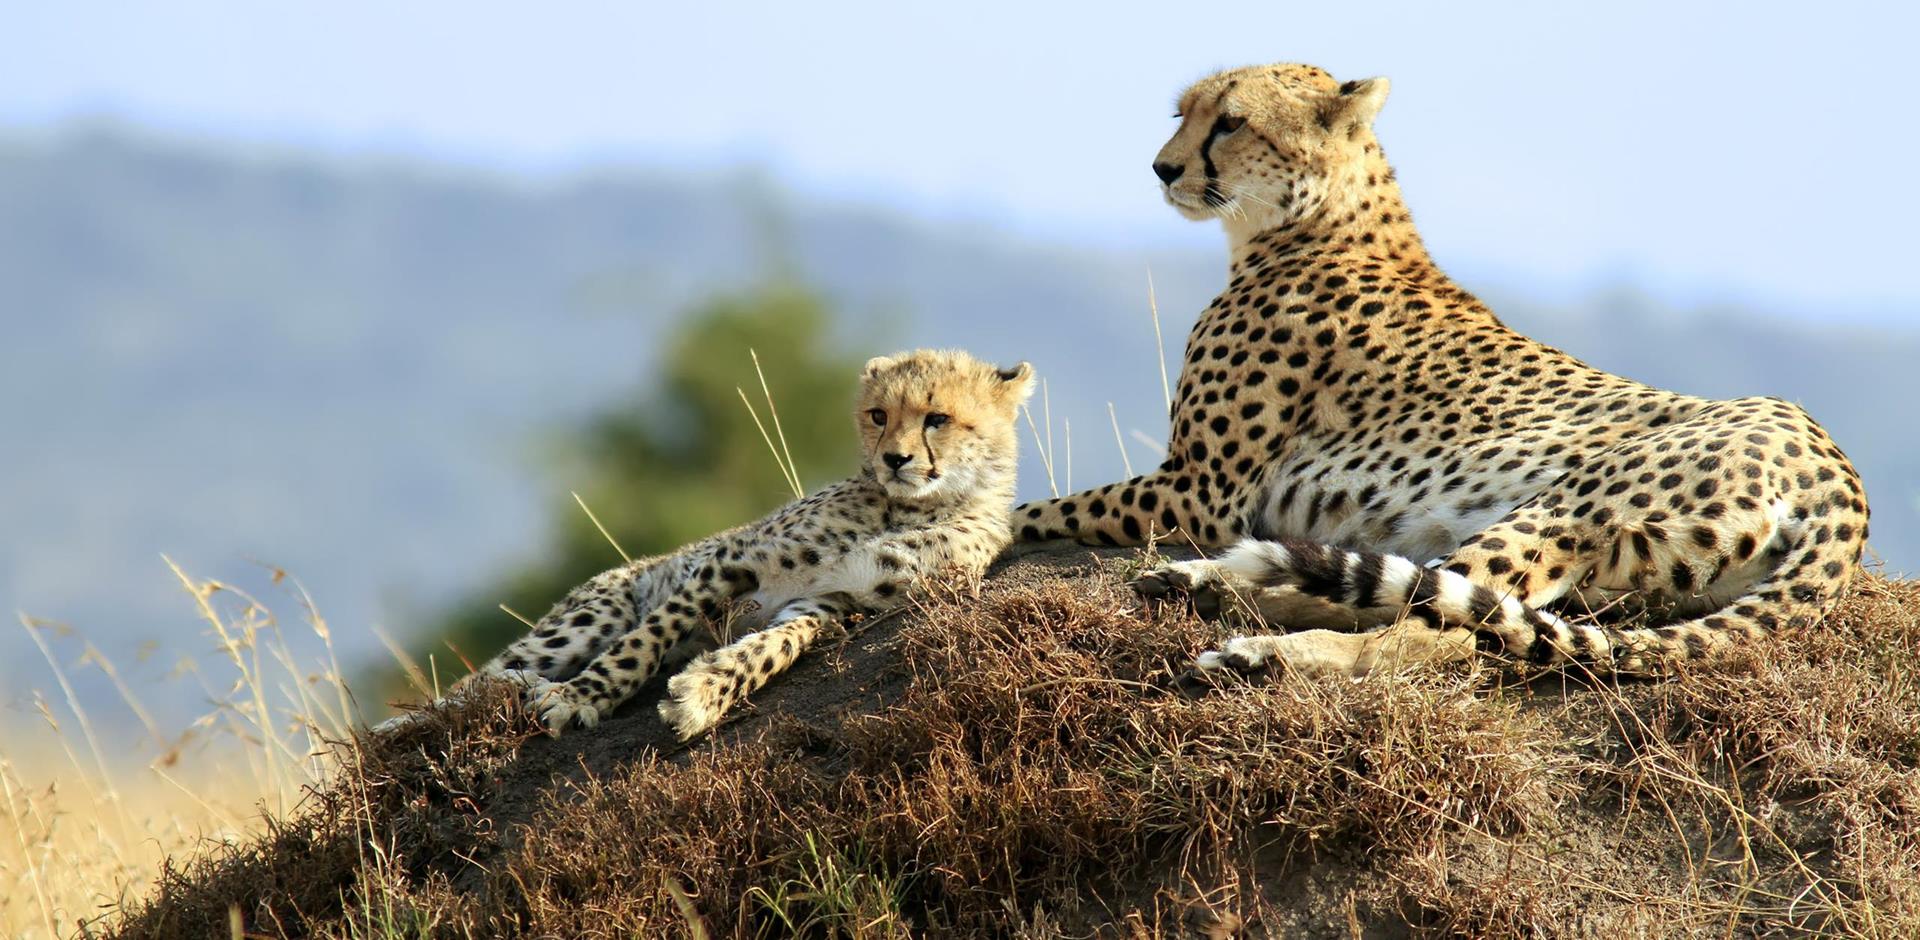 LSGJ - Kenya & Tanzania Wildlife Safari Day 10